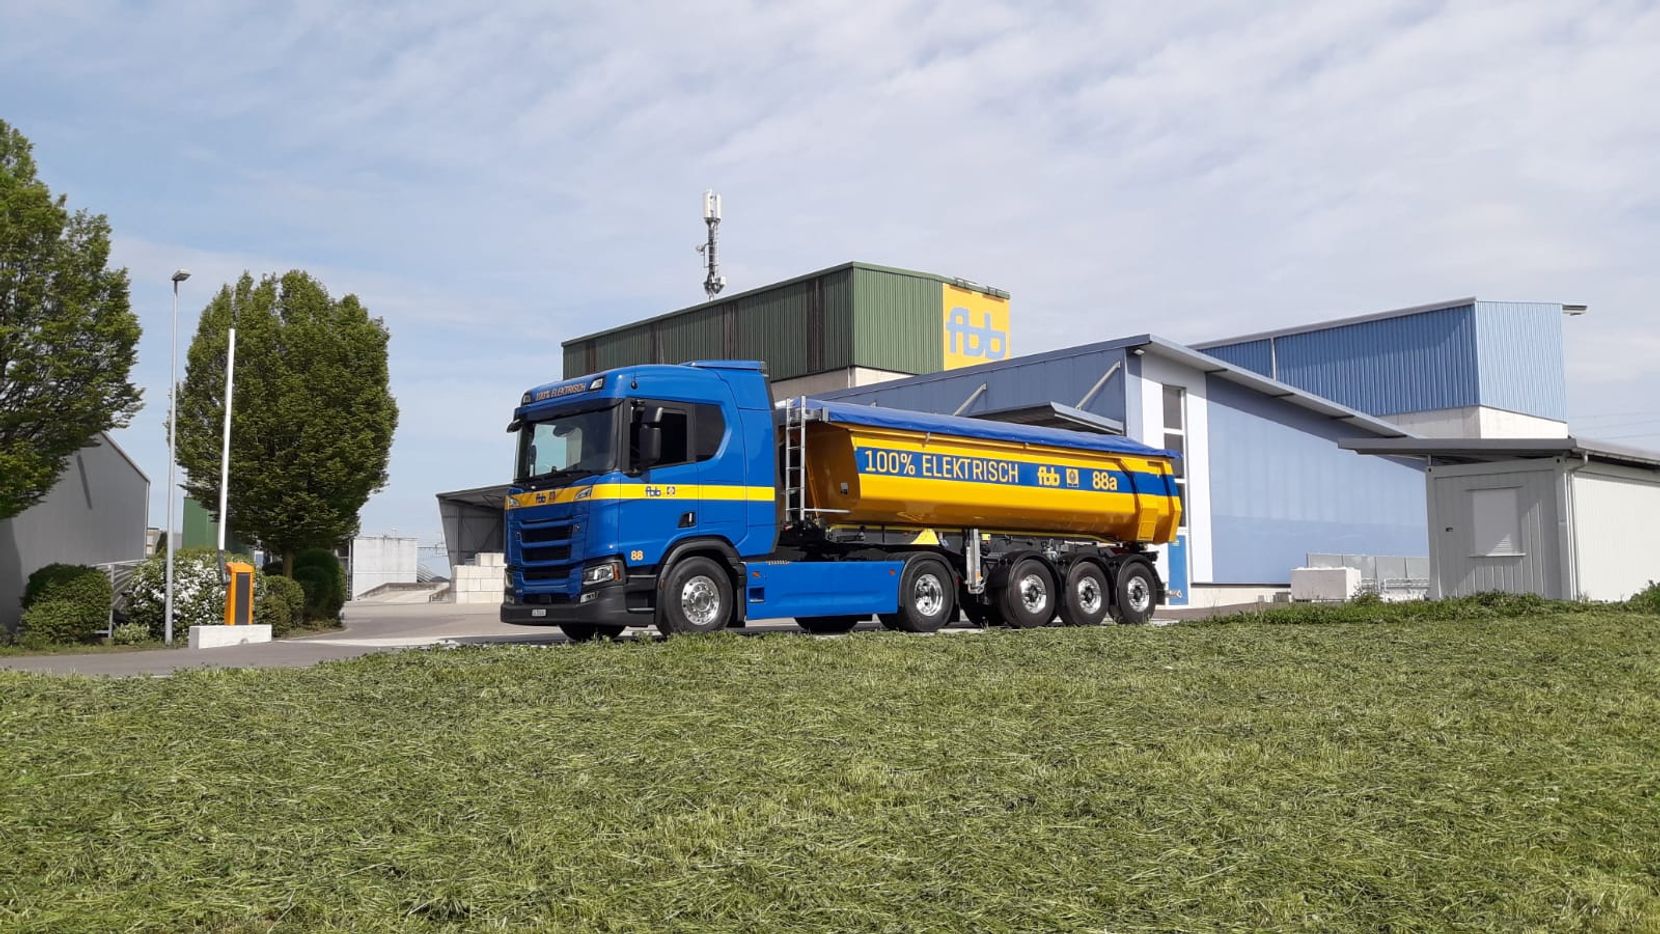 Ein in den Farben Blau und Gelb gehaltener Sattelschlepper der Firma FBB von Scania. Das Fahrzeug fährt batterieelektrisch.